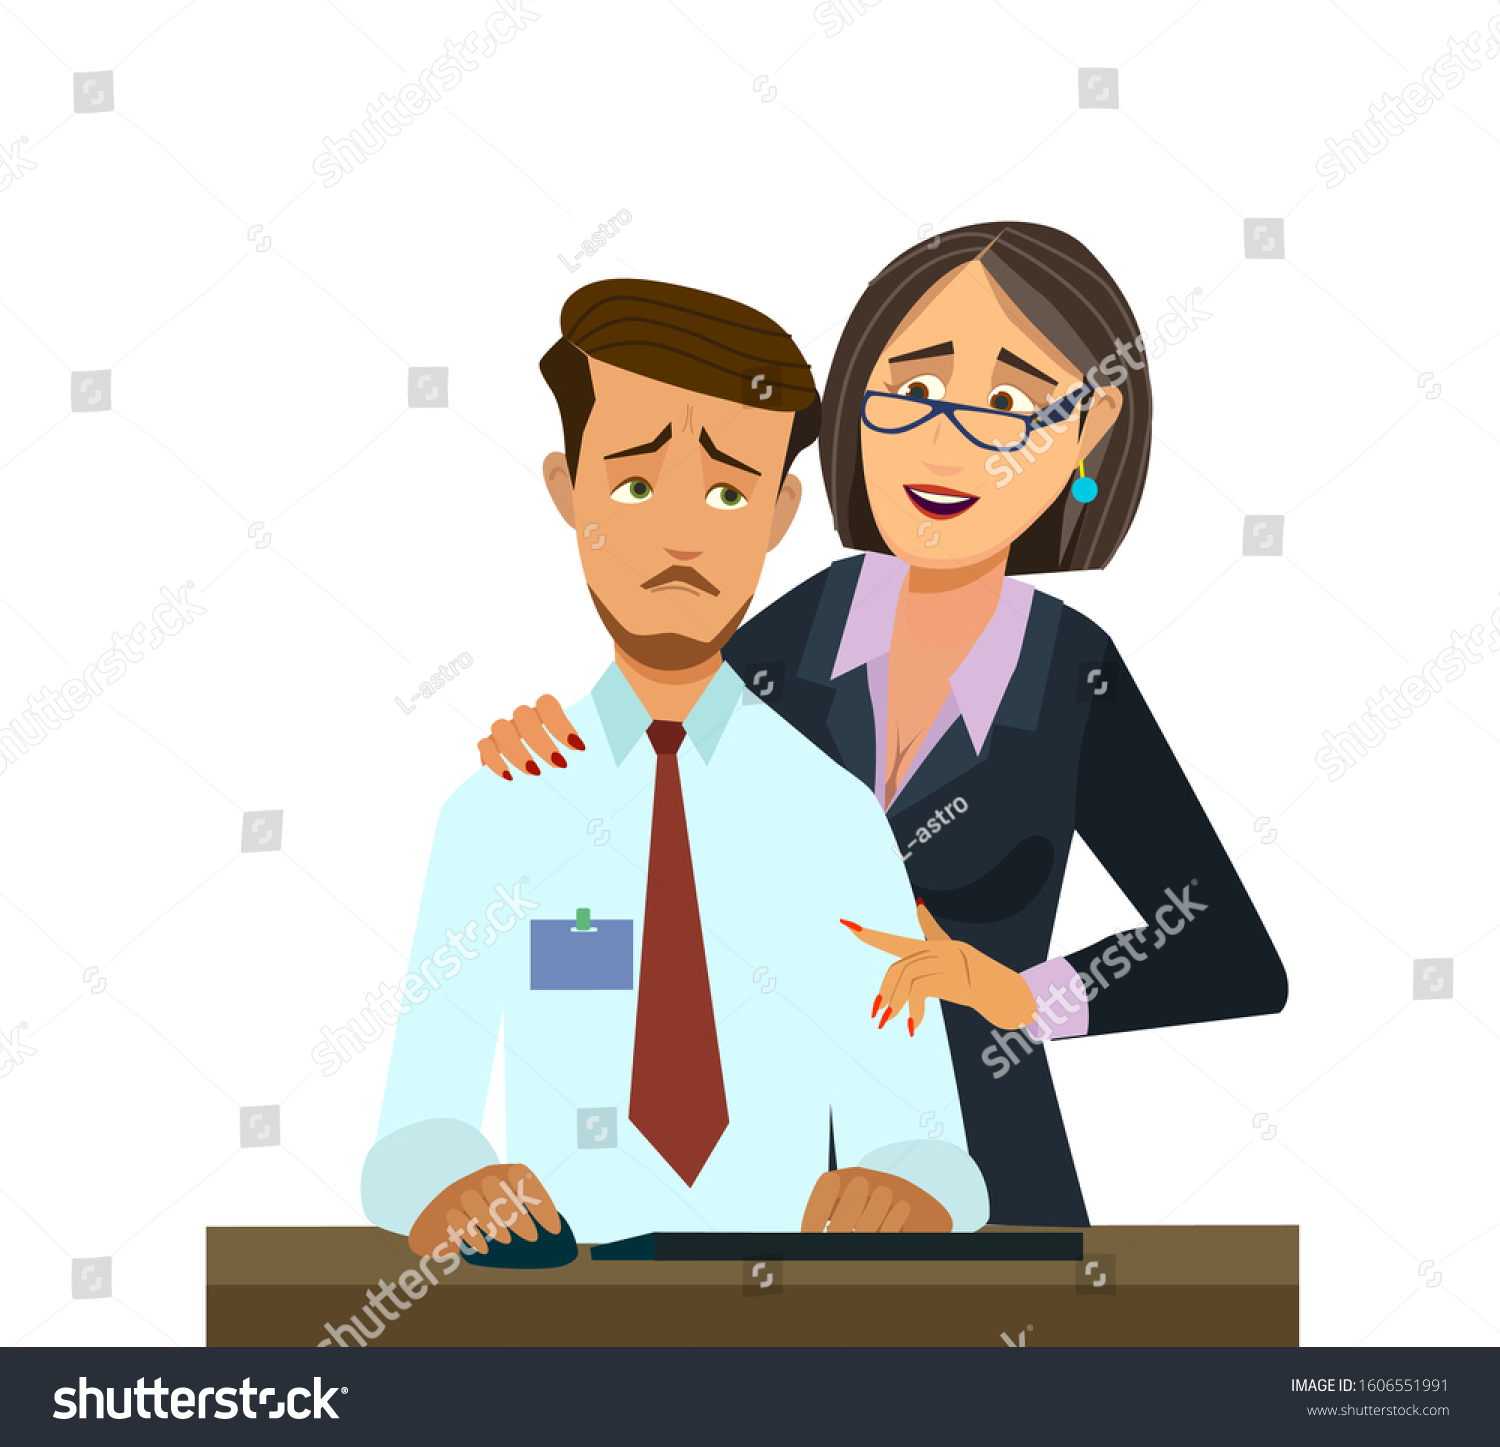 Sexual Harassment Work Office Woman Her Vector De Stock Libre De Regalías 1606551991 